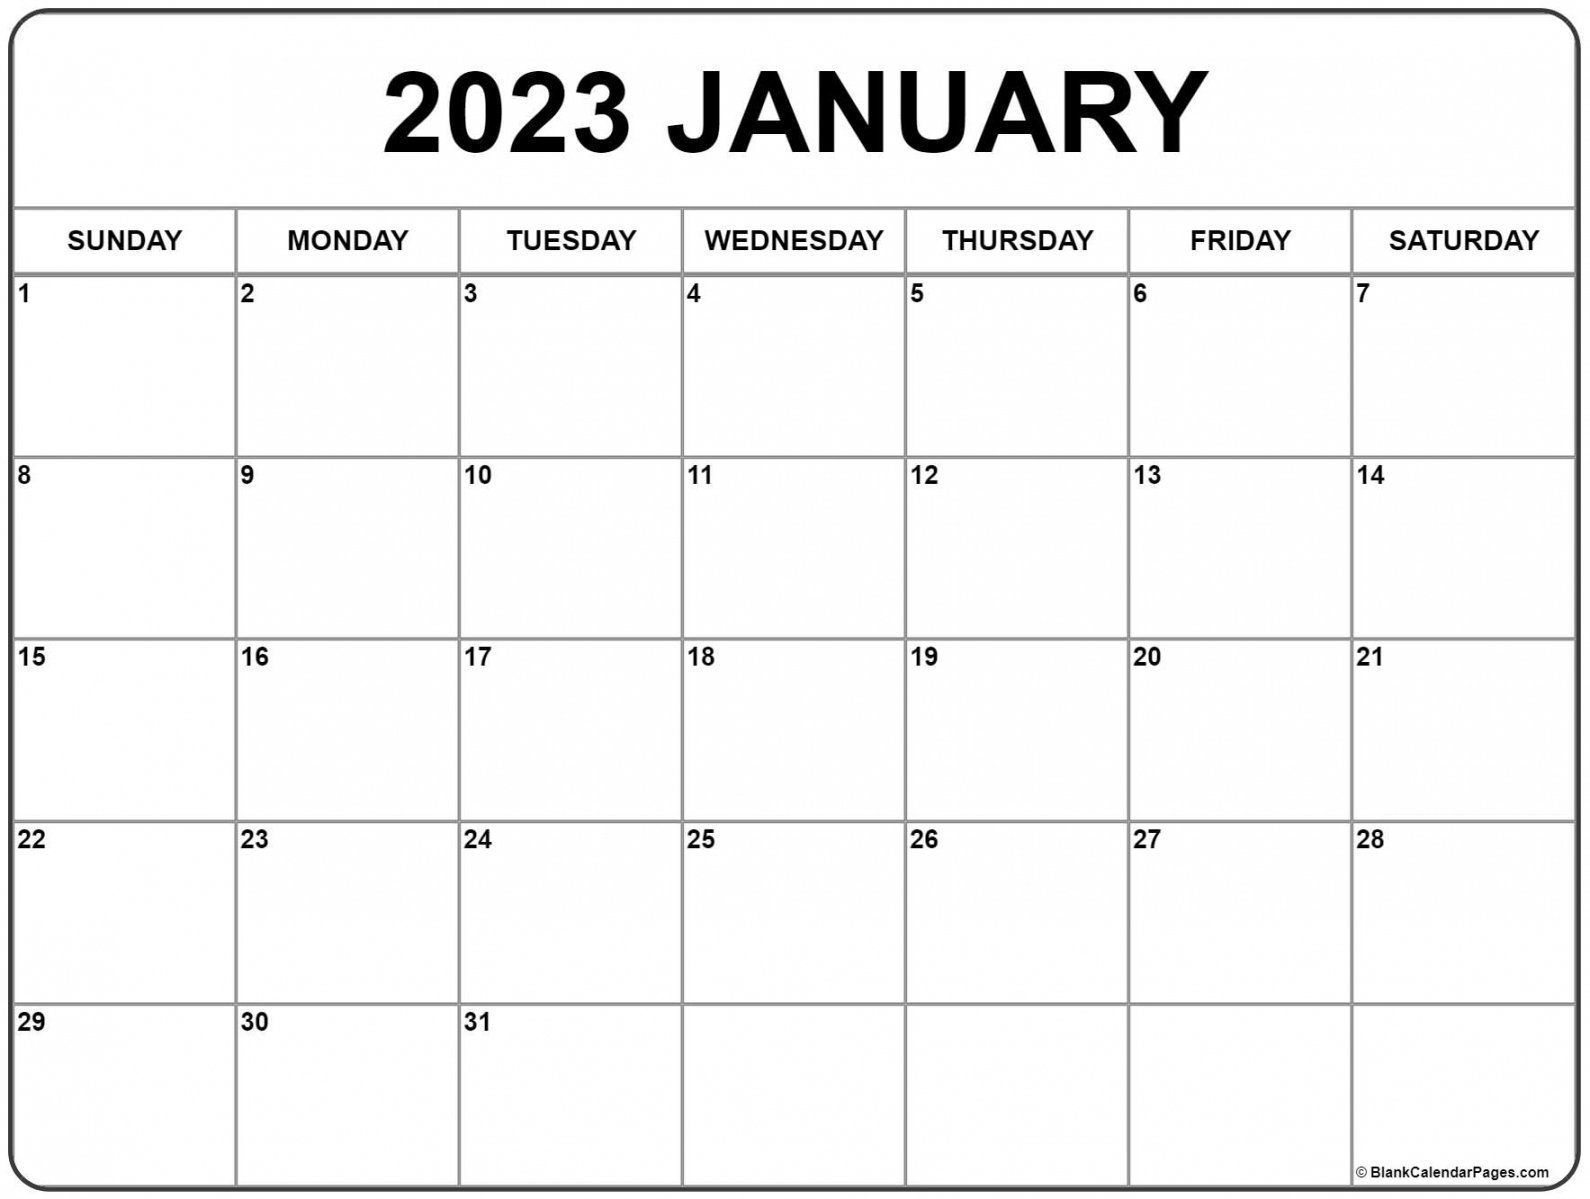 Calendar 2023 Printable Free - Printable - January  calendar  free printable calendar